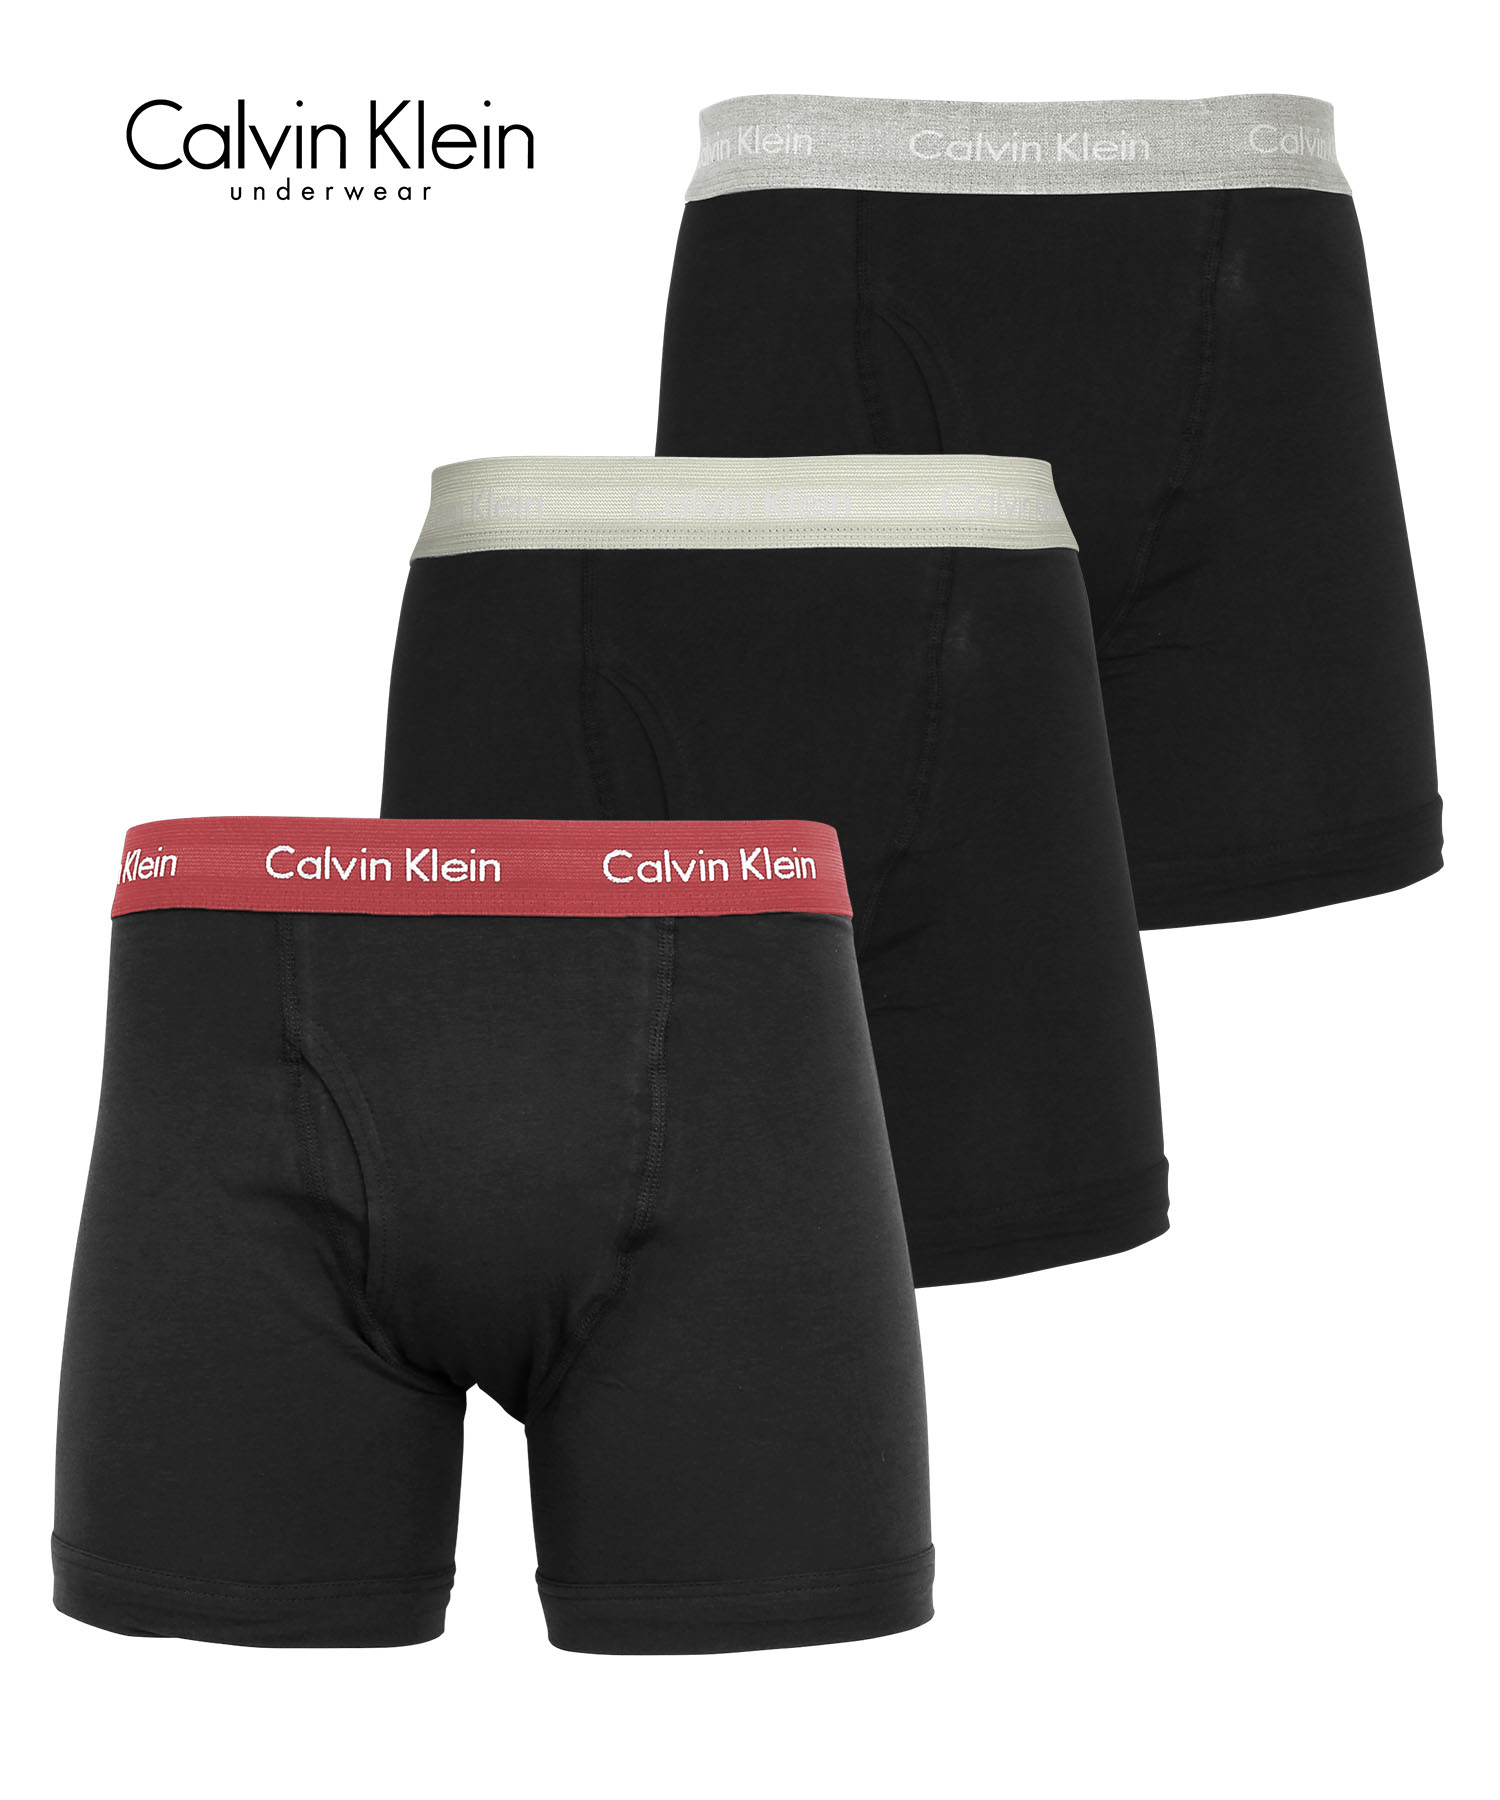 カルバンクライン ボクサーパンツ 3枚セット メンズ ロング Calvin Klein アンダーウェア 男性下着 コットン 前開き CK 父の日